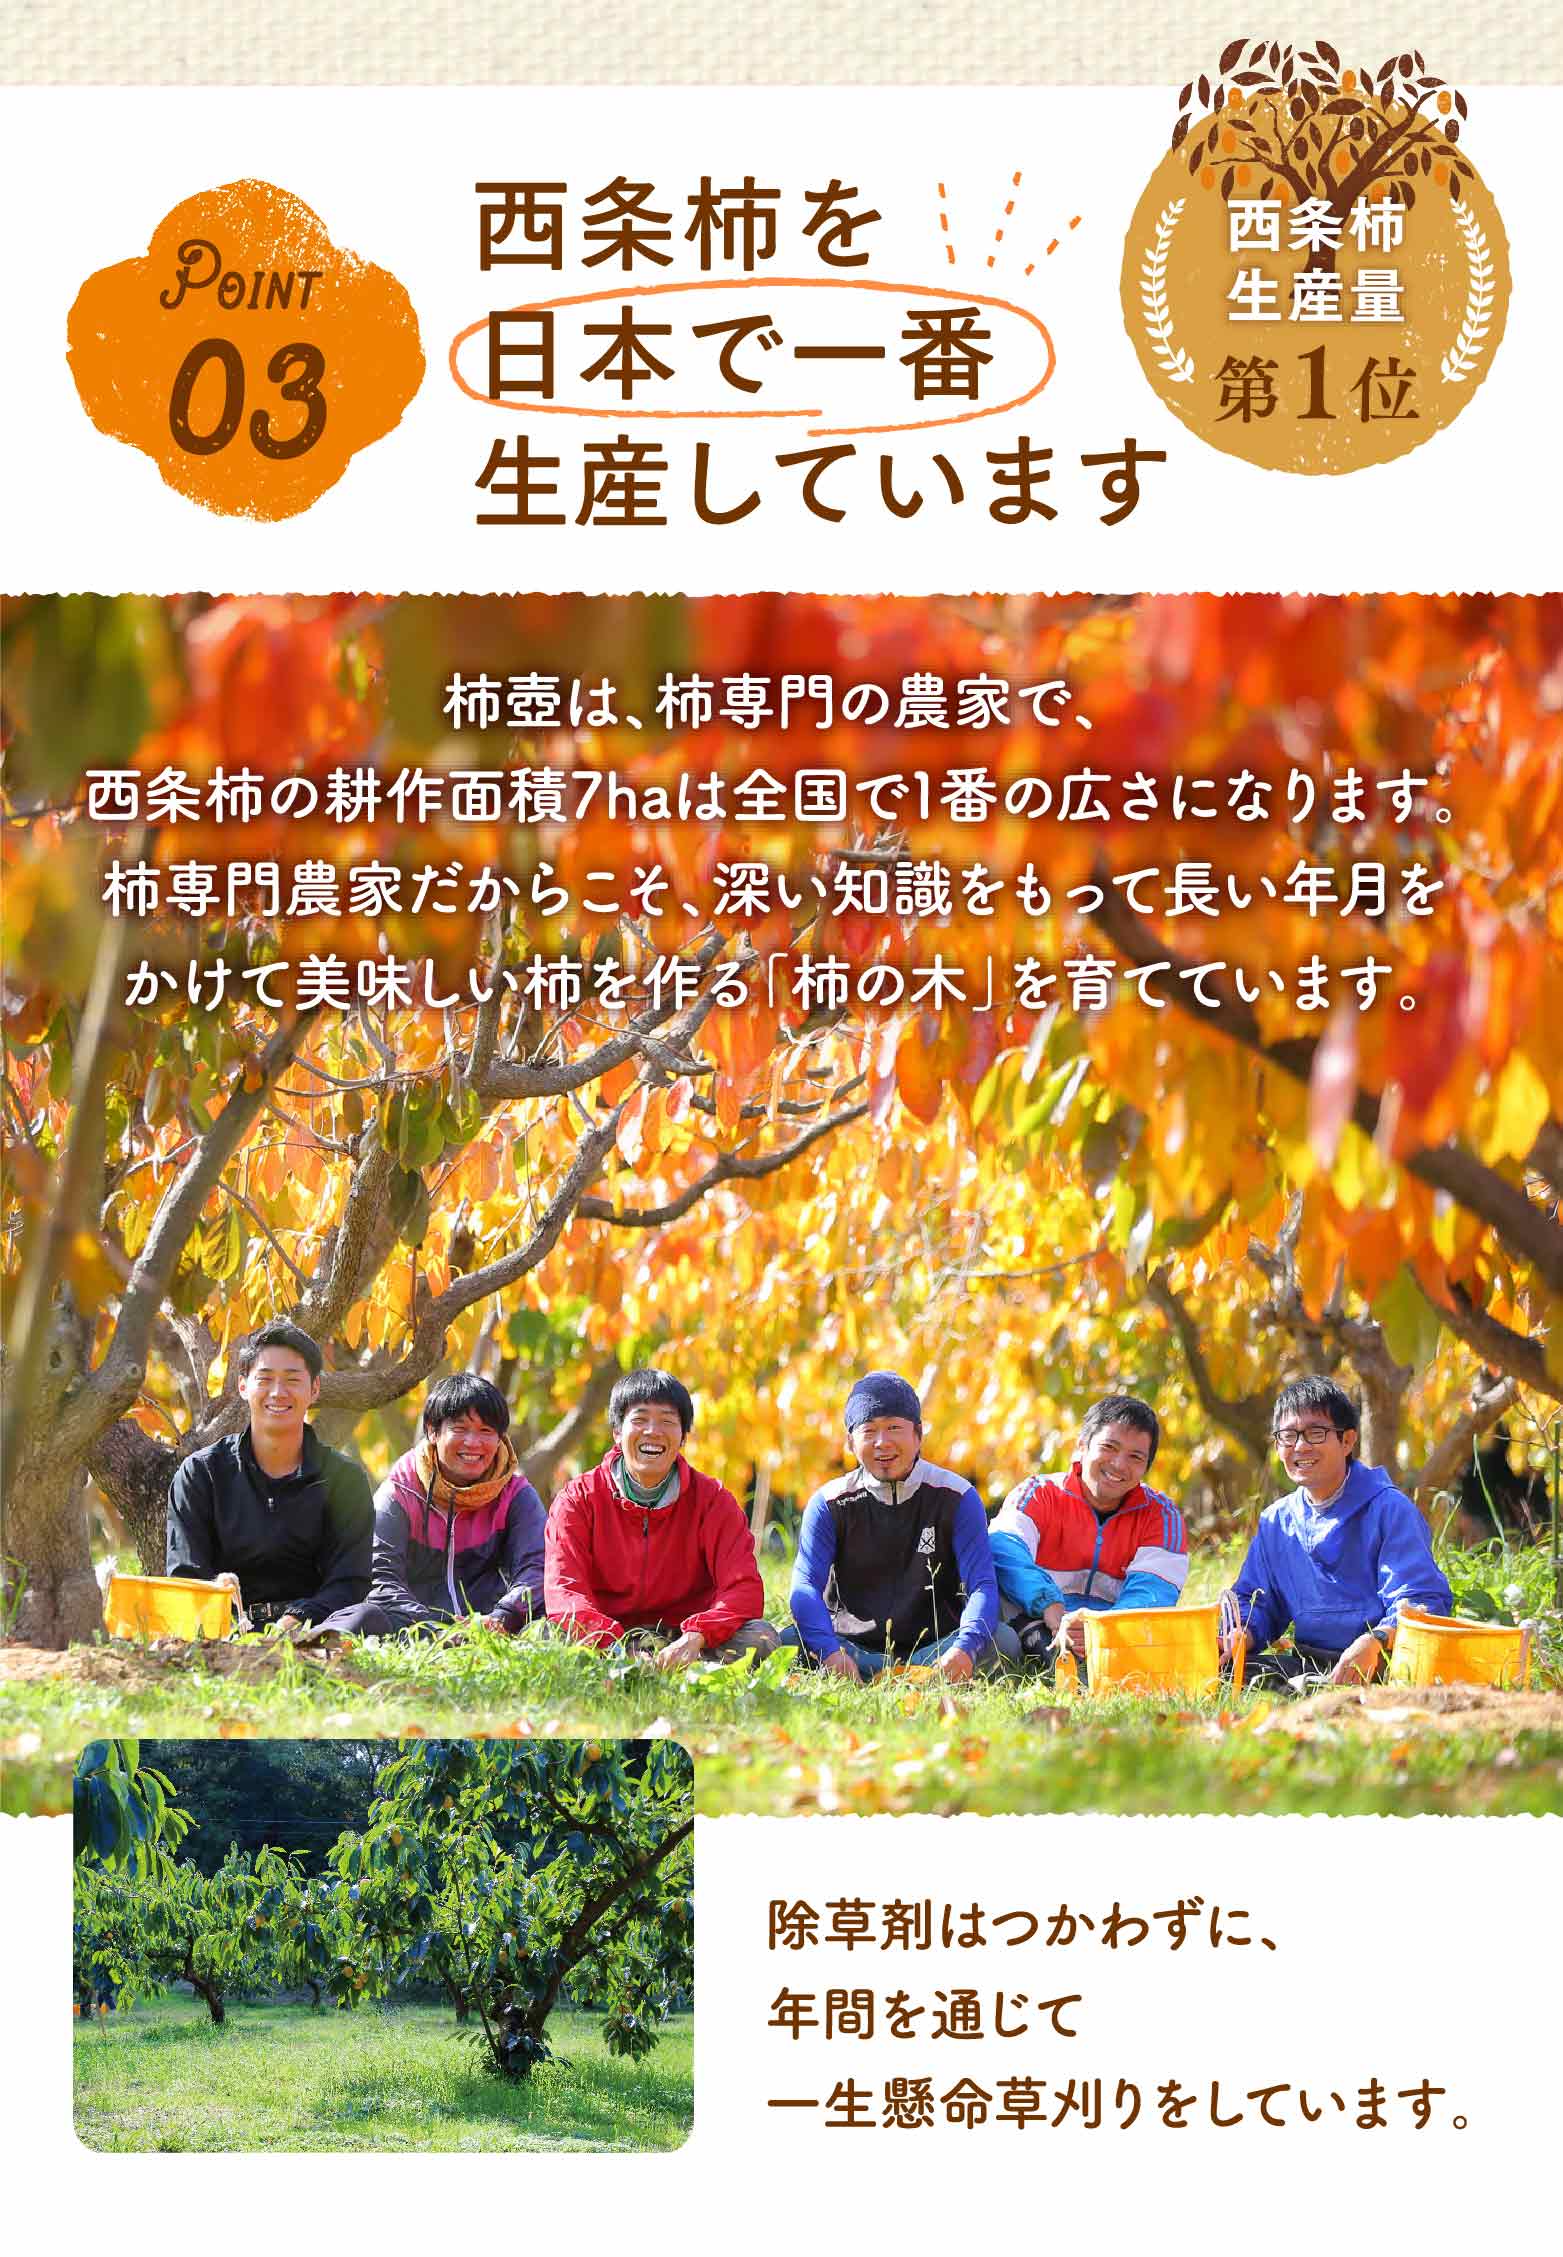 ポイント3。西条柿を日本で一番生産しています。西条柿の生産量が、日本1位です。柿壺は、柿専門の農家で、西条柿の耕作面積は7haは全国で1番の広さになります。柿専門農家、、深い知識ももってって長い年月かかけてけて美味しい柿を作る「柿の木」を育てています。除草剤は使わずに、年間を通じて一生懸命草刈りをしています。